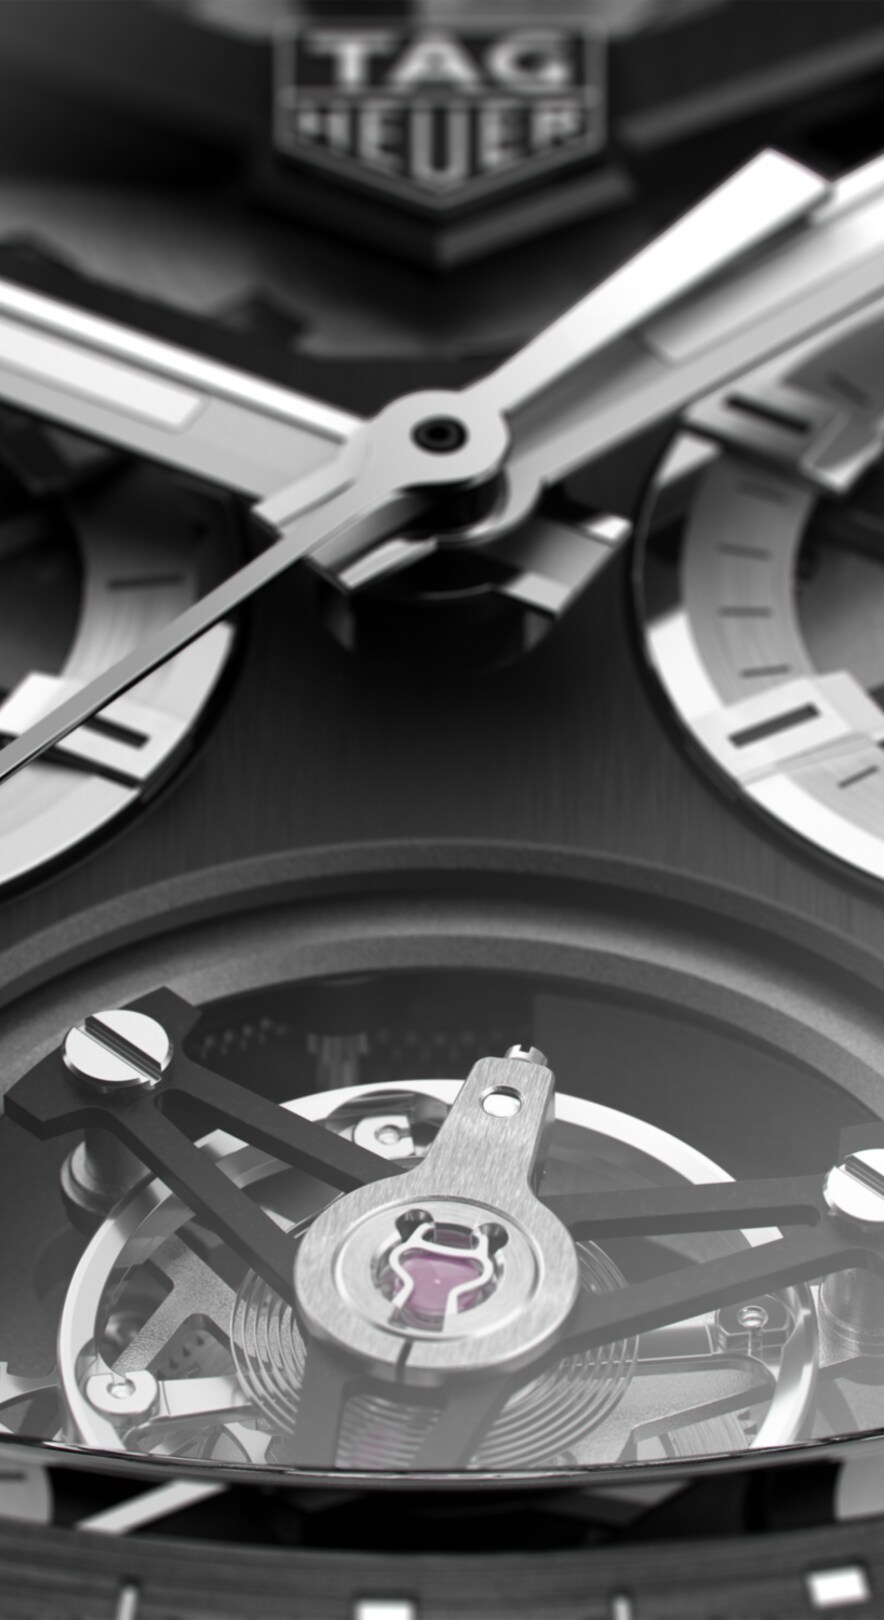 TAG Heuer Carrera Chronograph Tourbillon - Titanium & Ceramic 